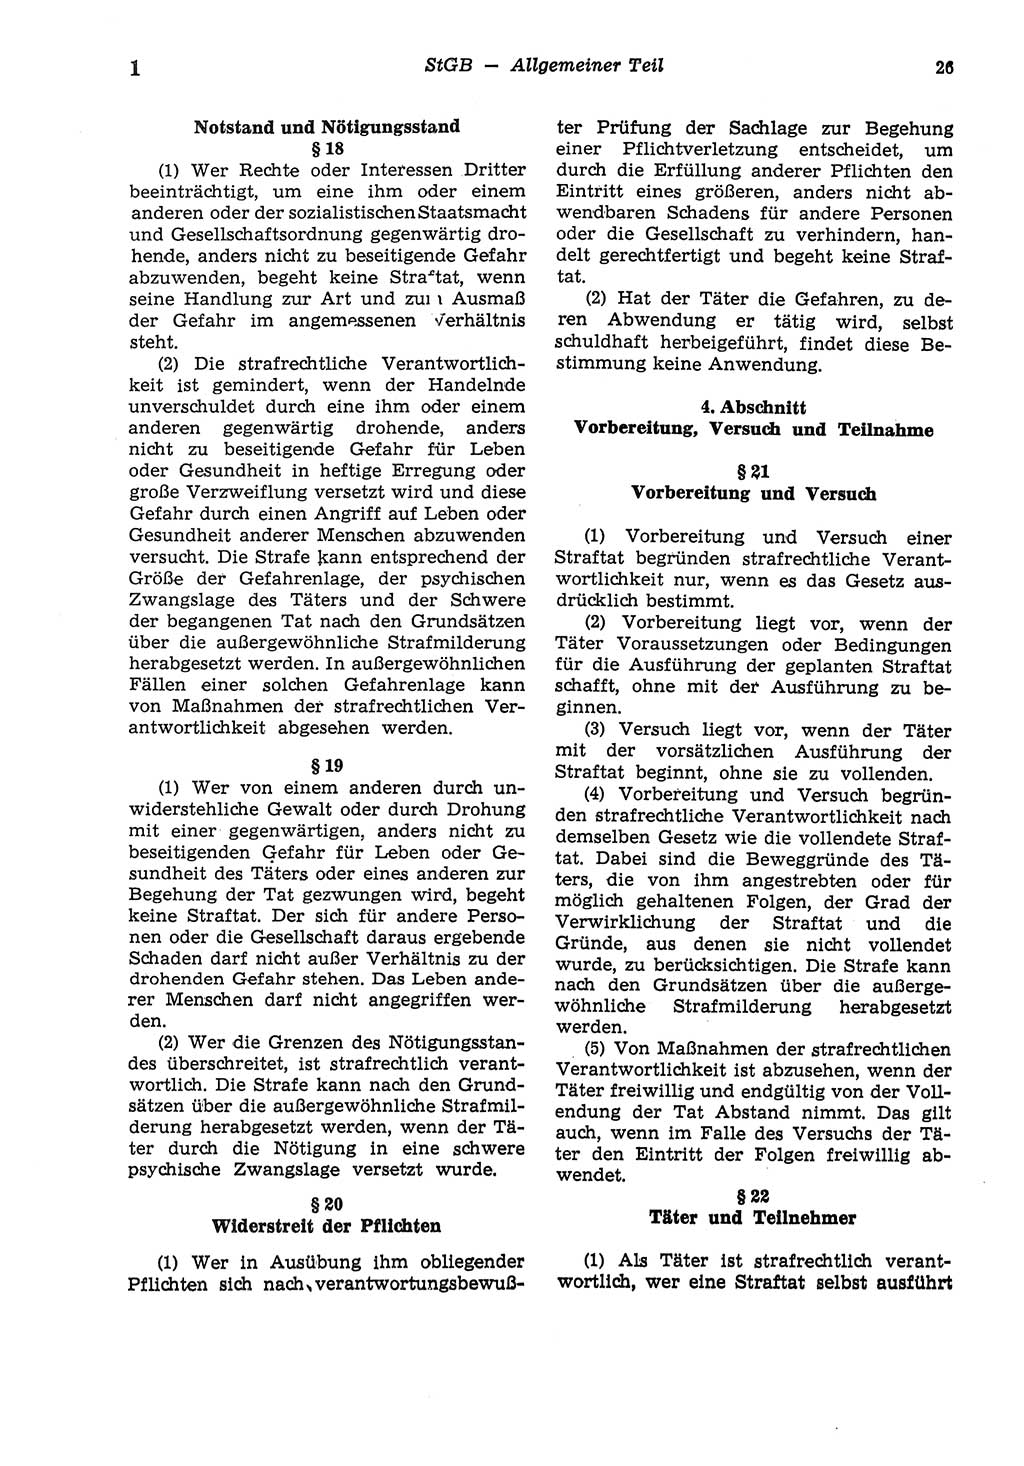 Strafgesetzbuch (StGB) der Deutschen Demokratischen Republik (DDR) und angrenzende Gesetze und Bestimmungen 1975, Seite 26 (StGB DDR Ges. Best. 1975, S. 26)